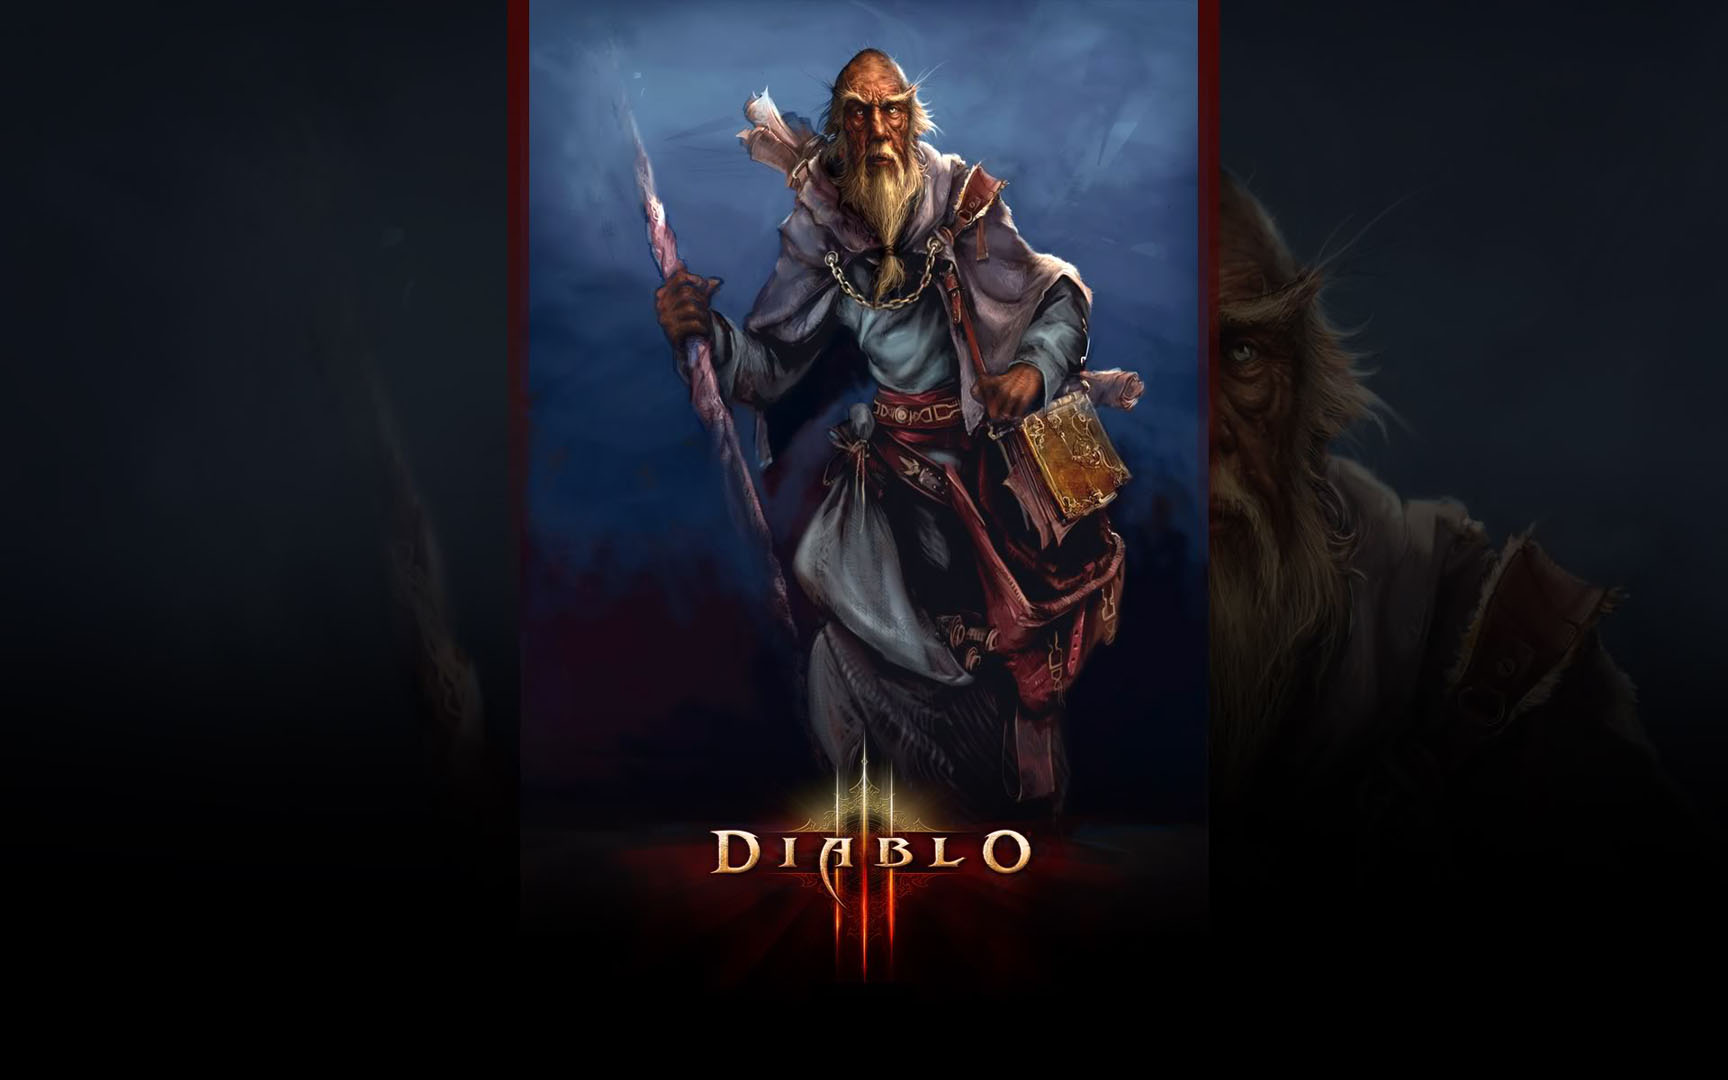 Diablo Wizard Wallpaper HD In Games